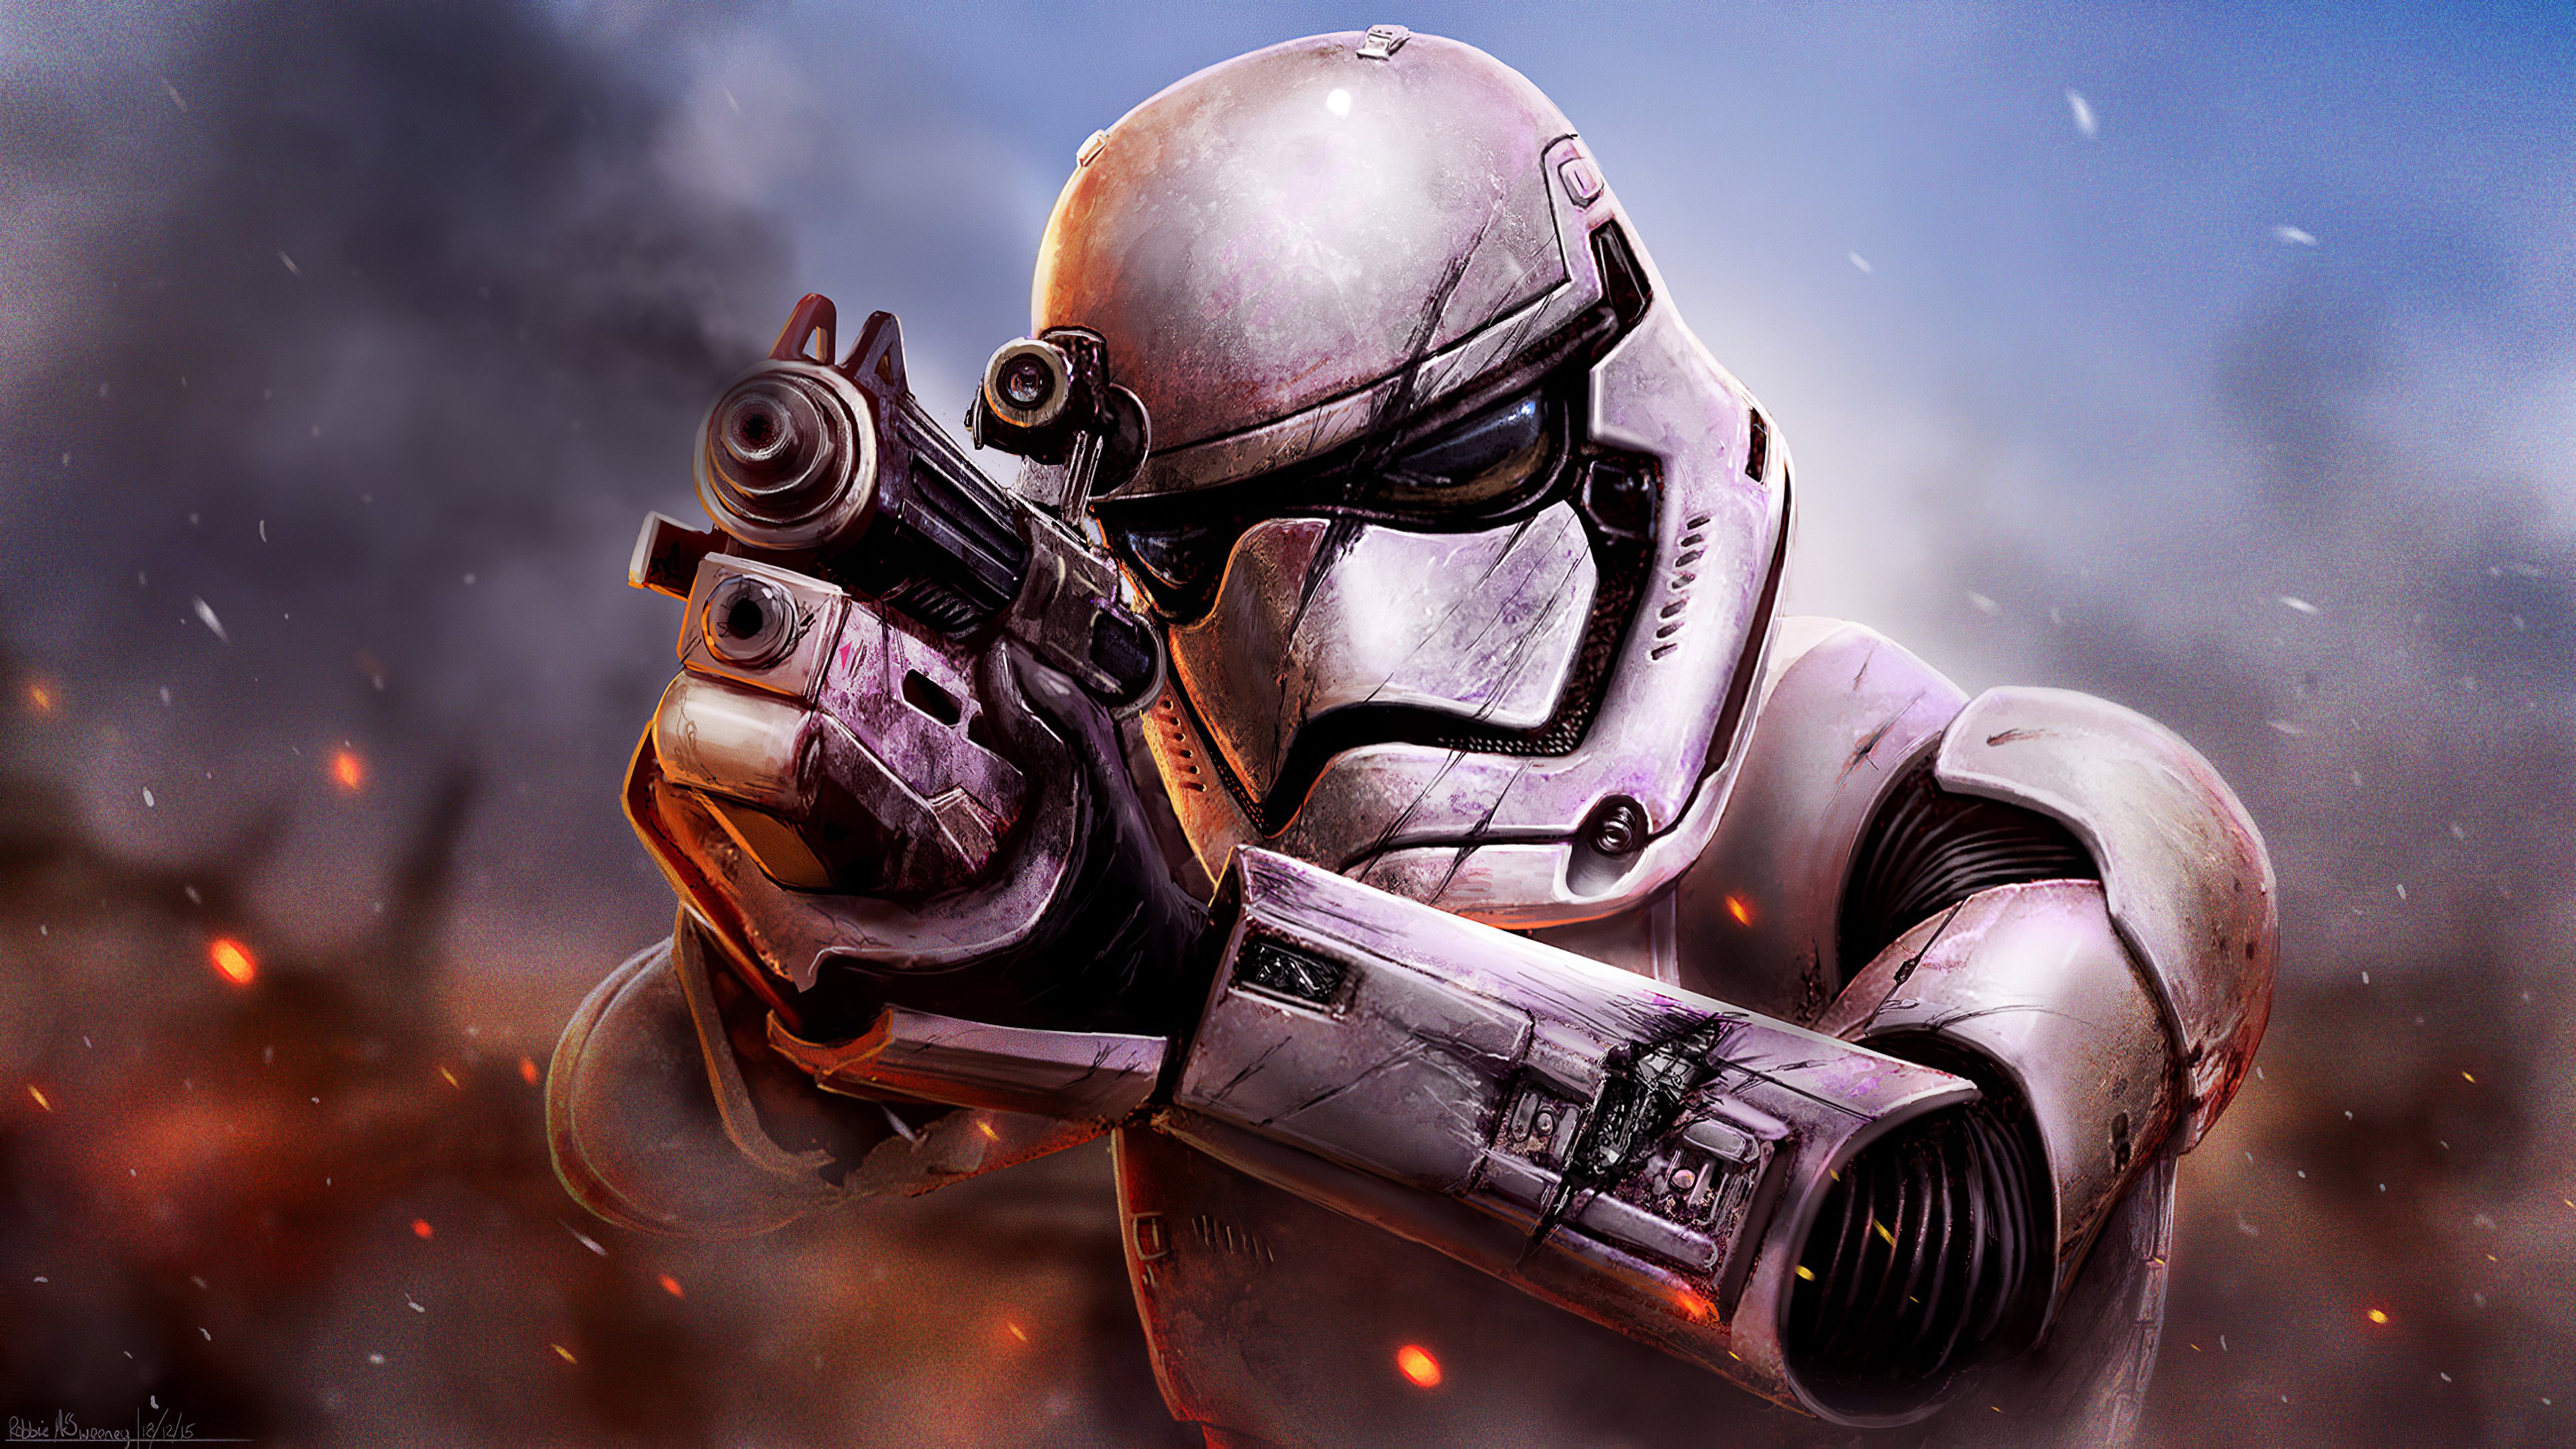 Fondos de pantalla Stormtrooper de Star Wars Battlefront